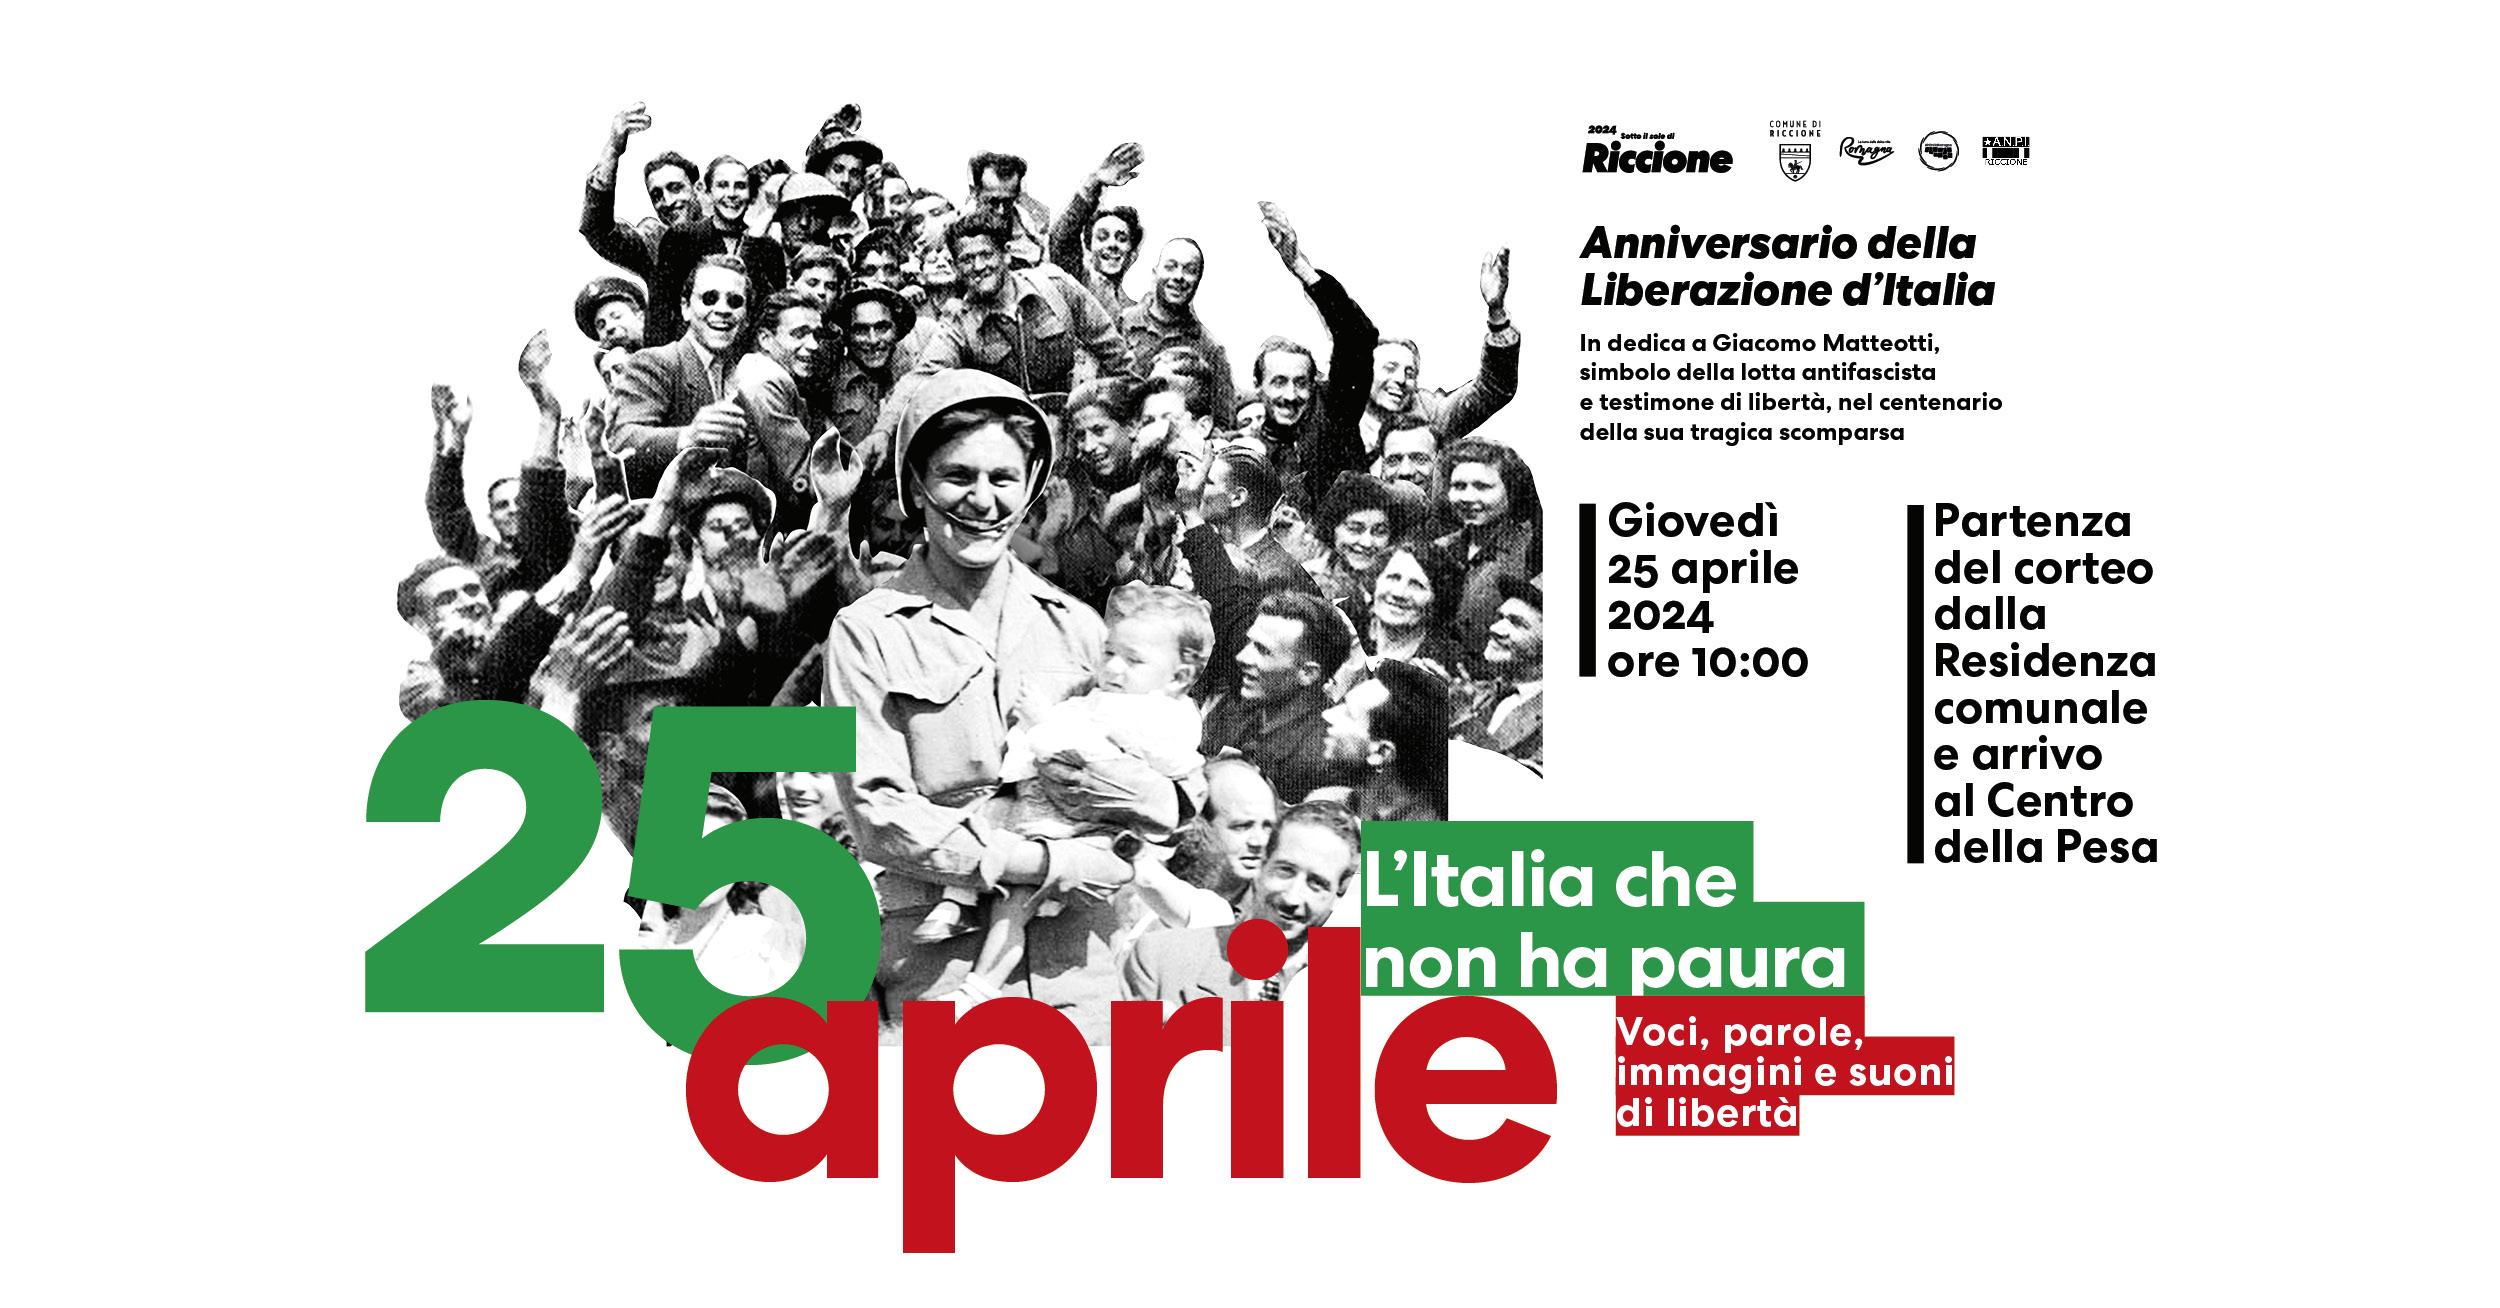 Riccione celebra la Liberazione con la poster art che racconta il 25 aprile, il corteo solenne e un incontro pubblico con il giornalista Ezio Mauro